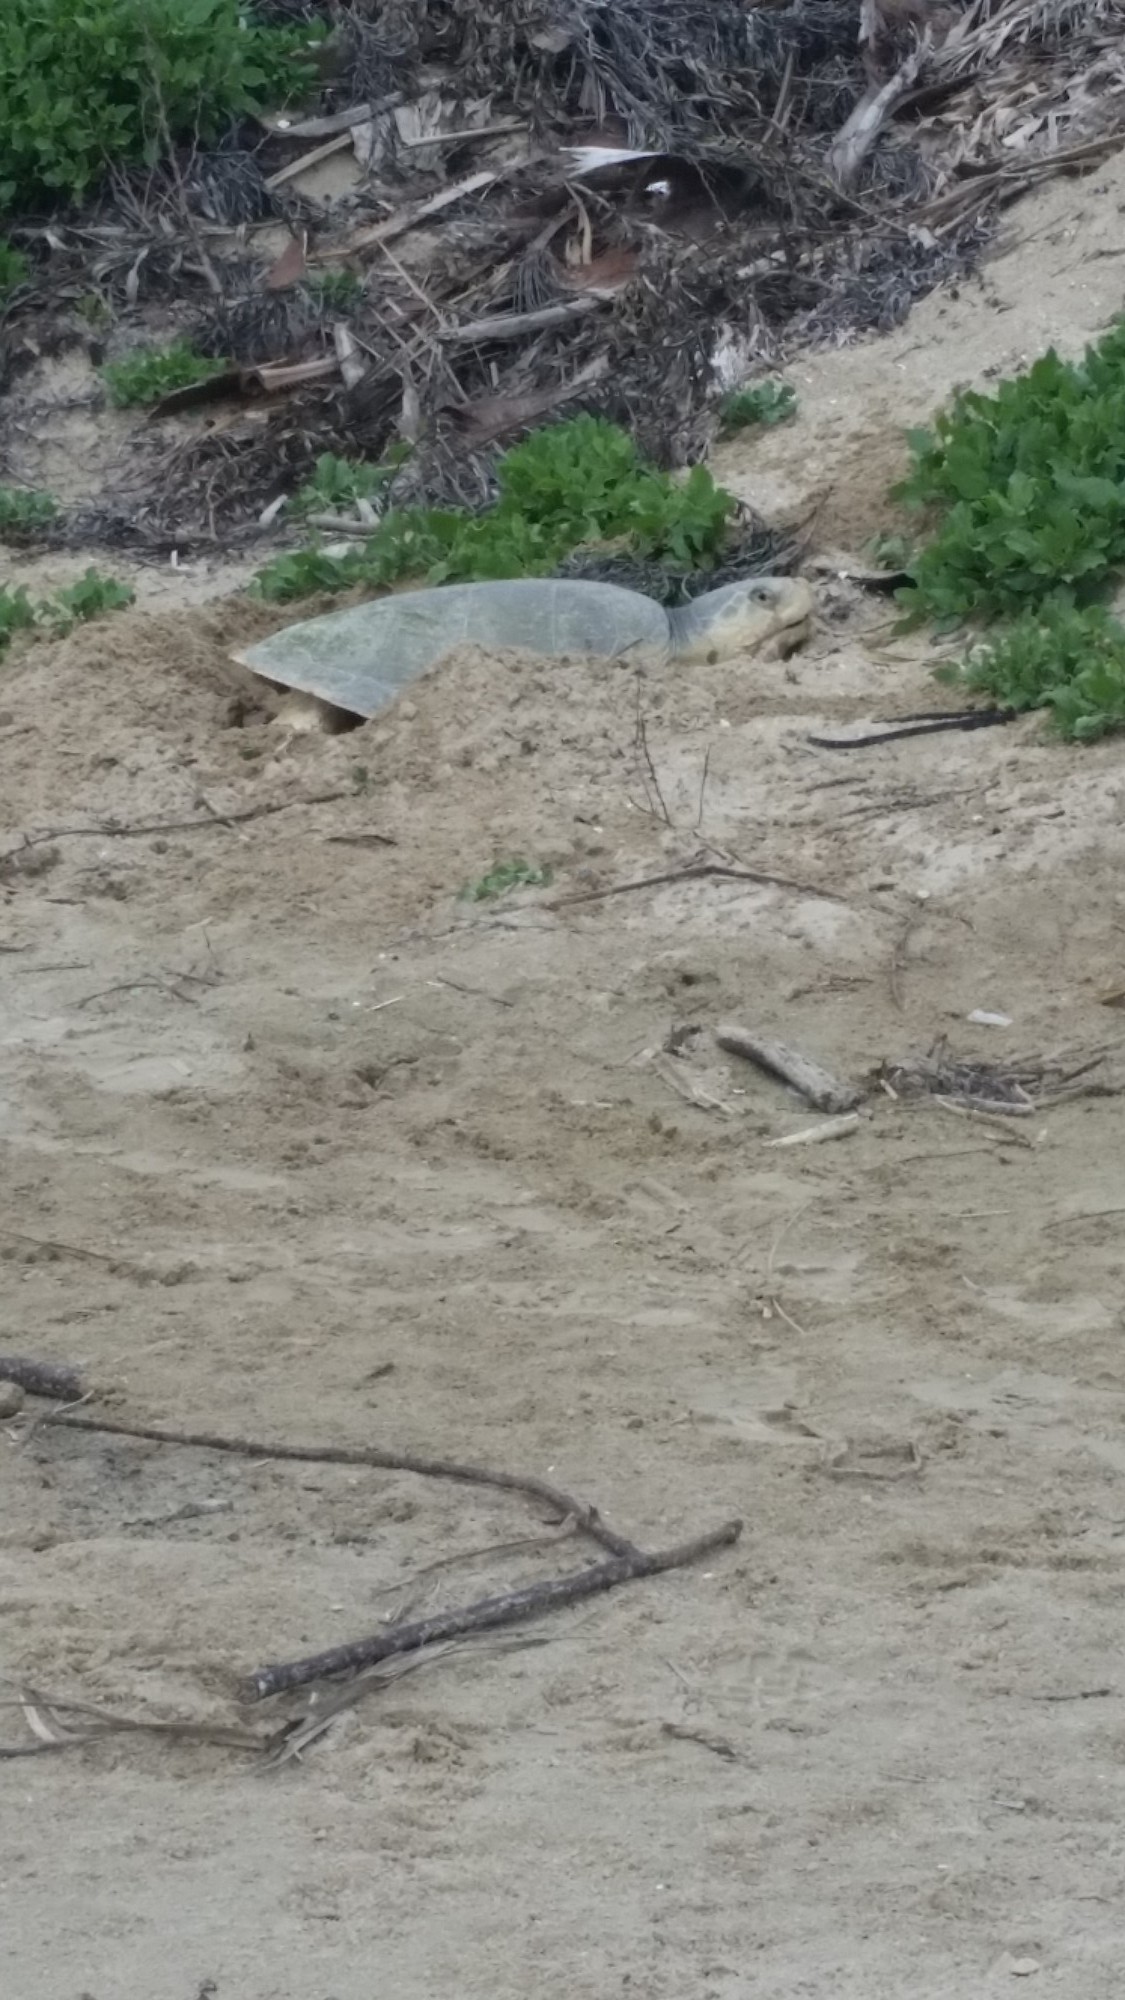 Sea Turtle Nesting Season Begins on Upper Texas Coast